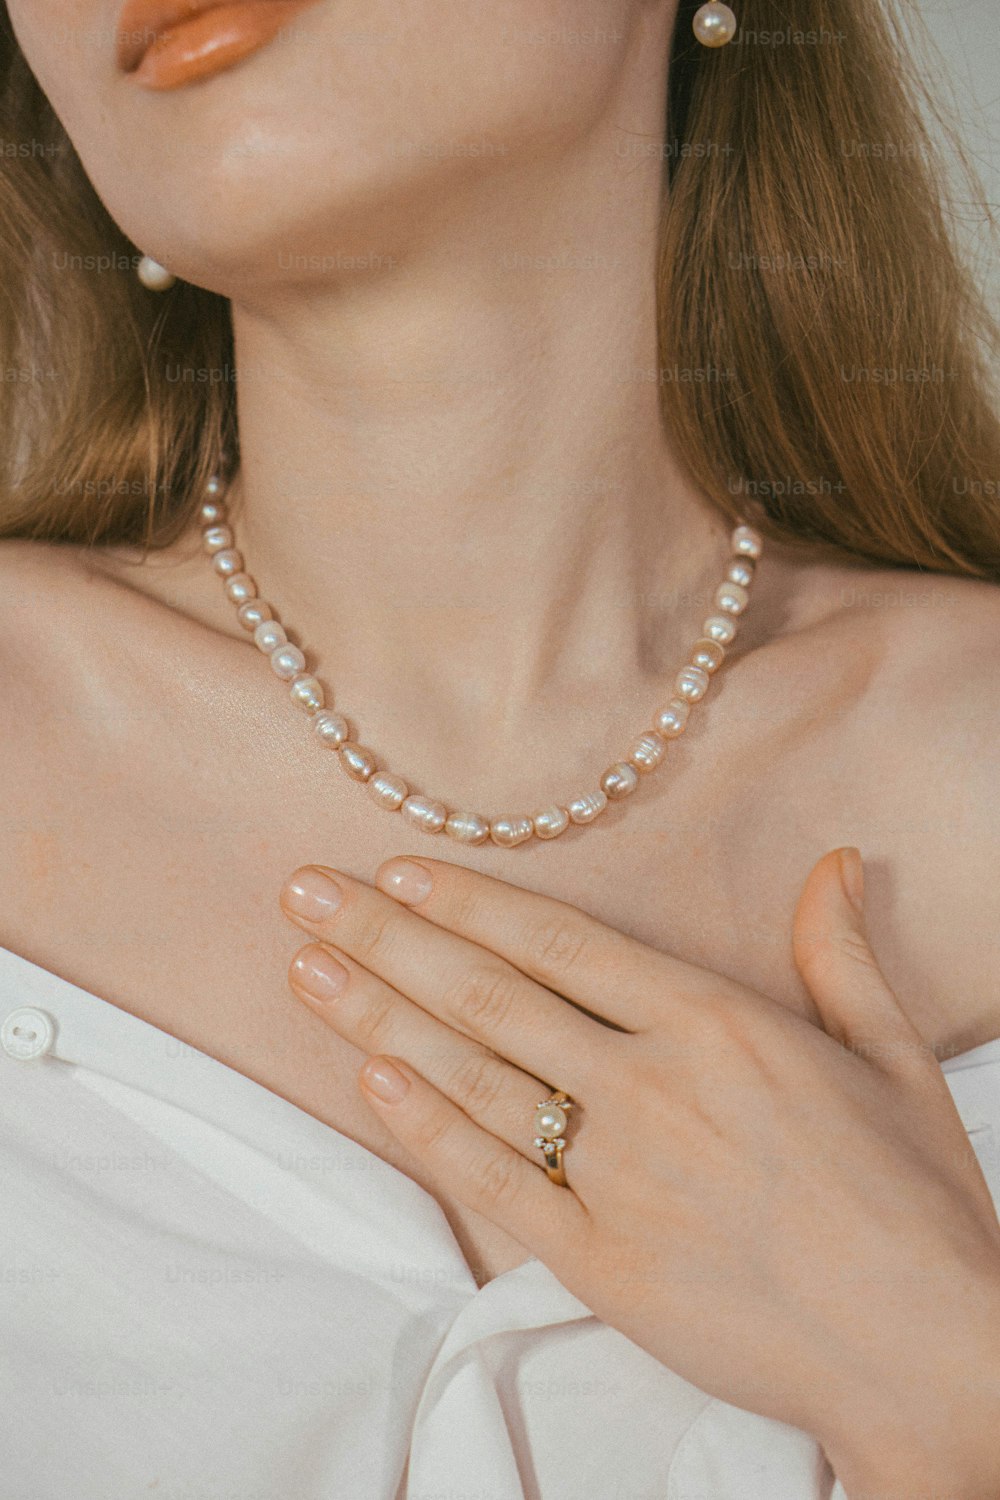 Una mujer con un collar de perlas y un anillo